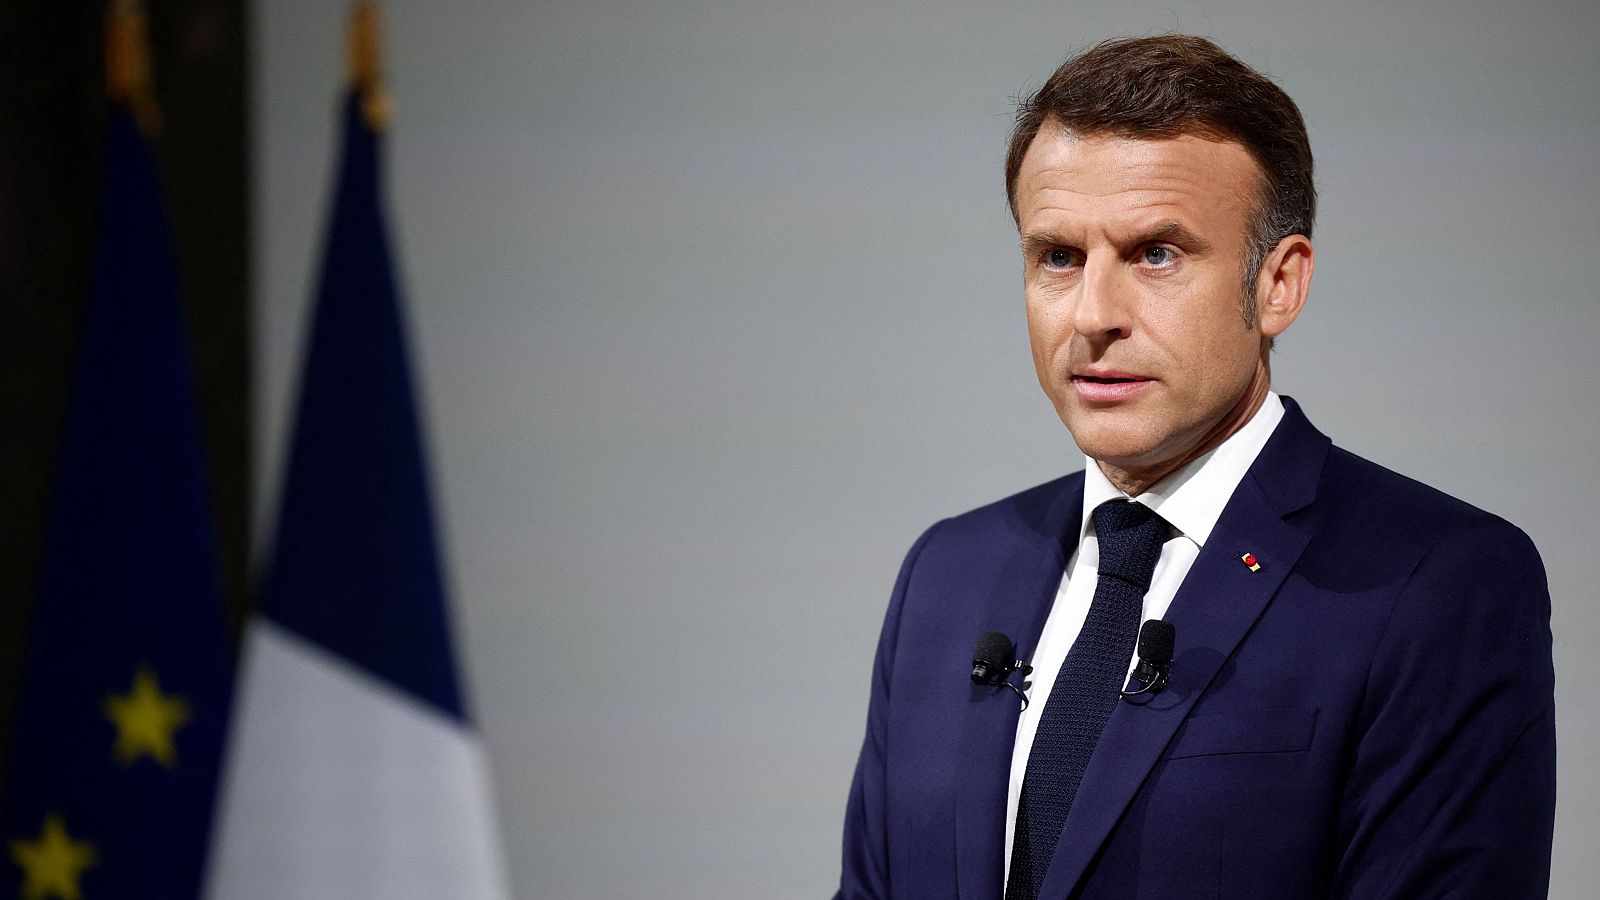 Macron denuncia "alianzas anti naturales" en ambos extremos ante las próximas legislativas